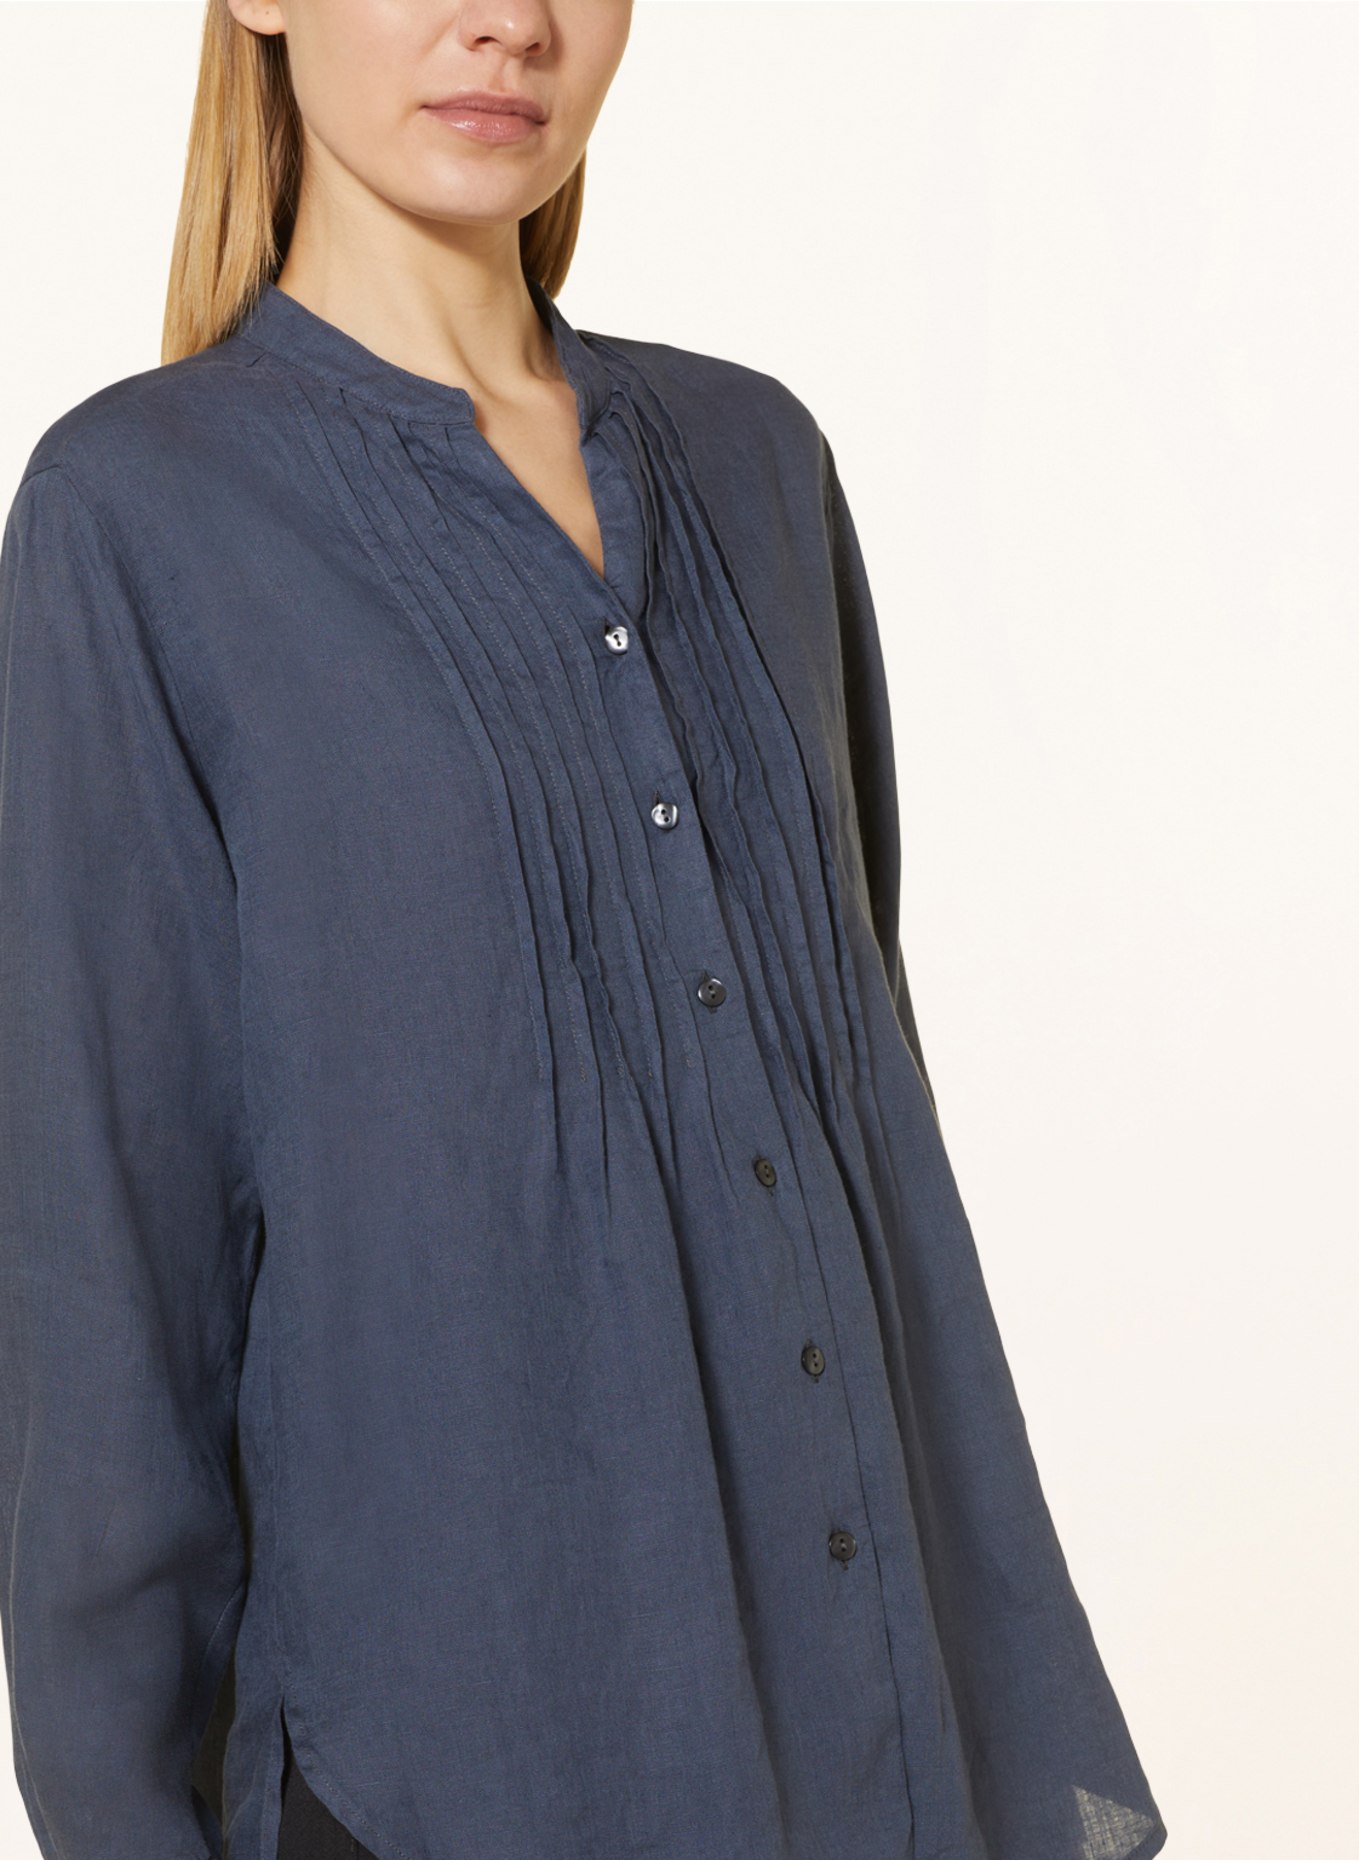 rossana diva Linen blouse, Color: DARK GRAY (Image 4)